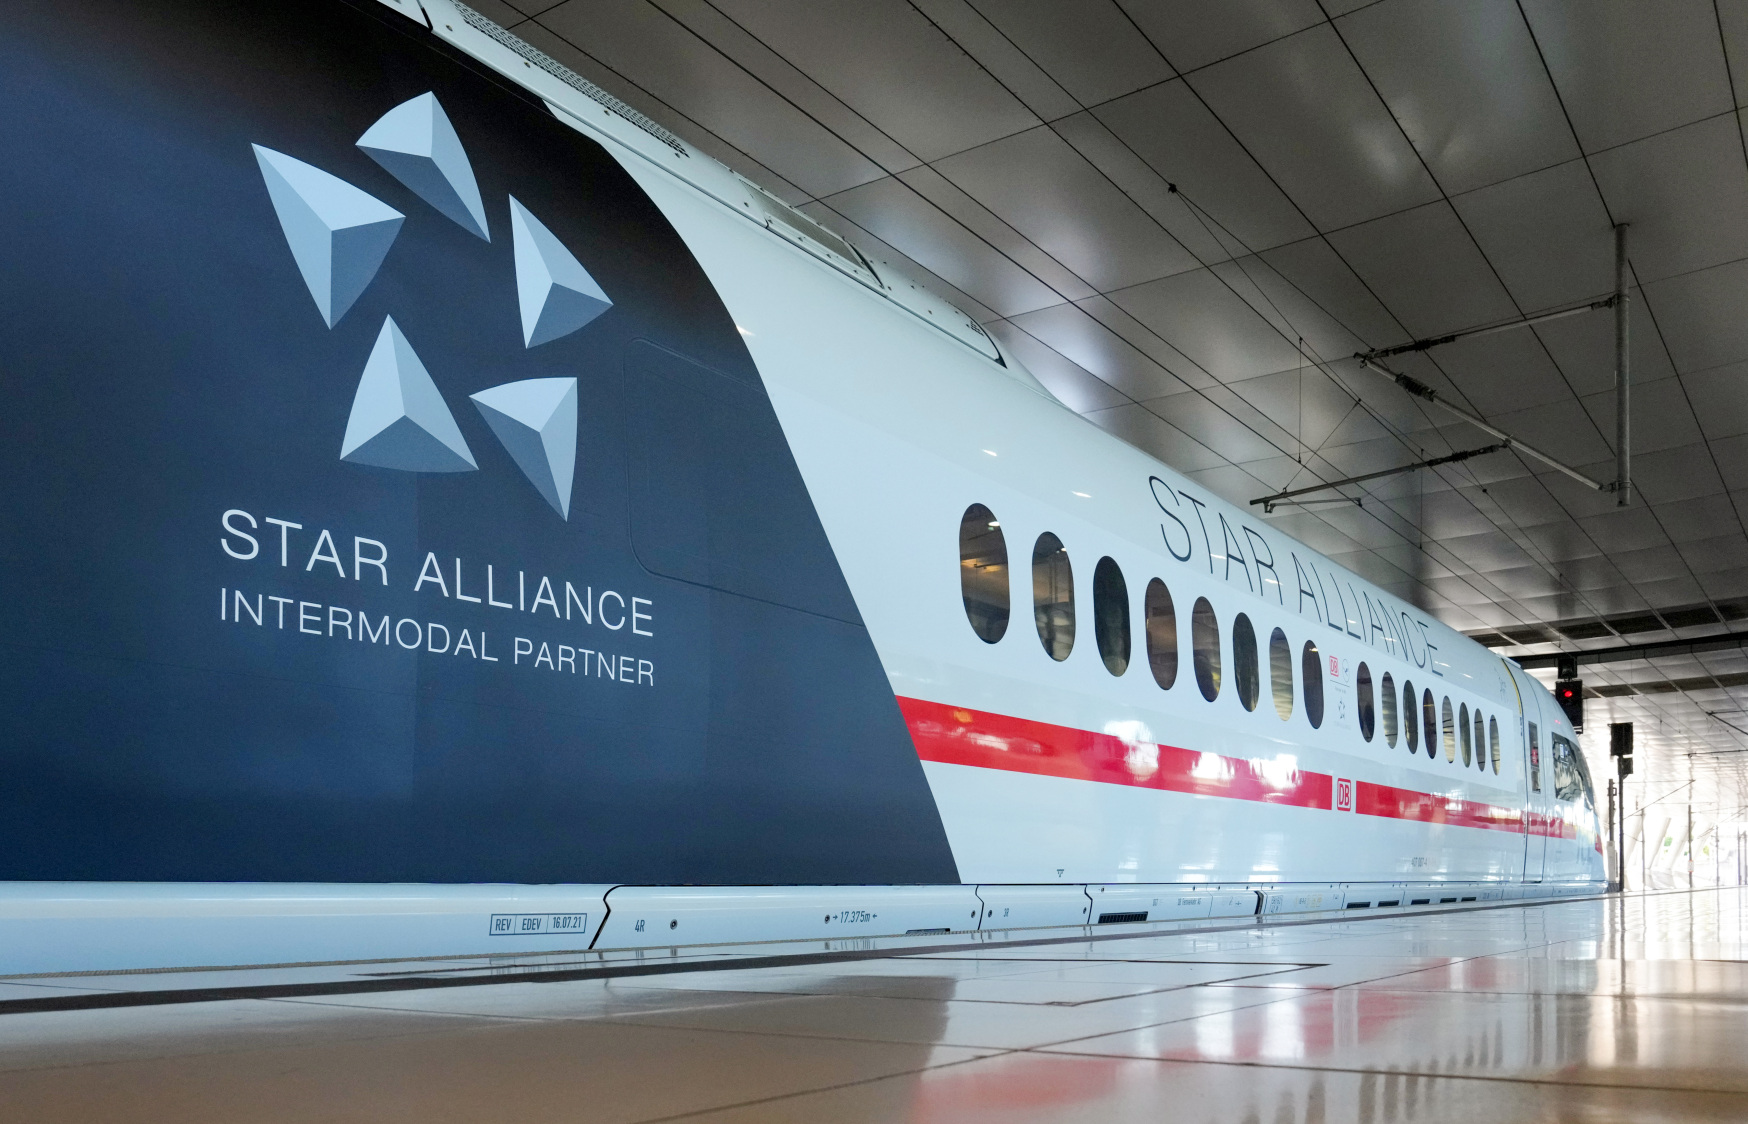 Intermodalität – DB wird erster intermodaler Partner der Star Alliance